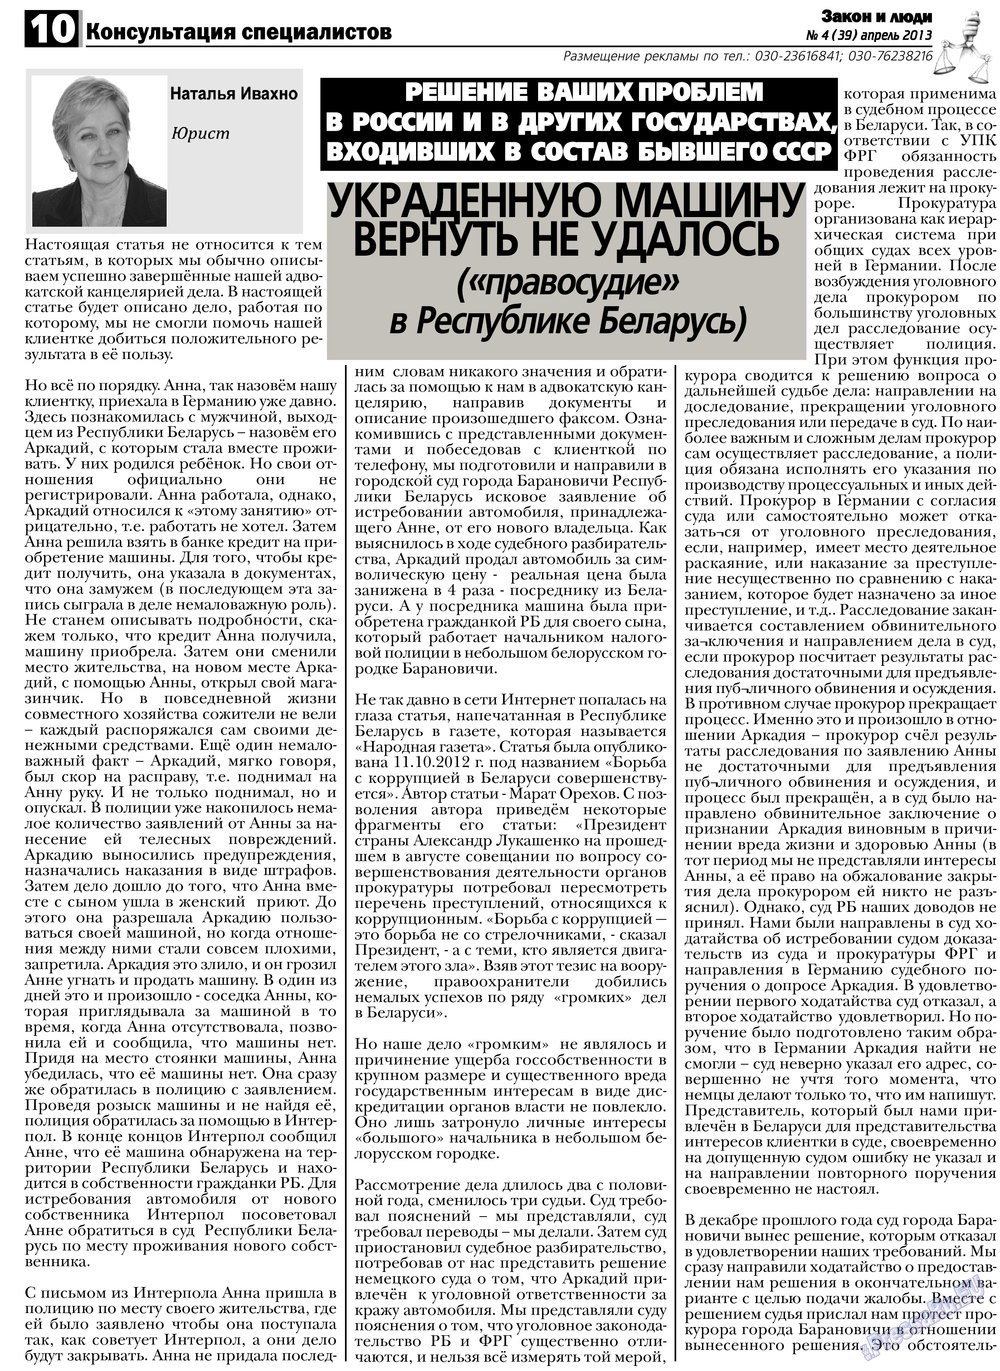 Закон и люди, газета. 2013 №4 стр.10